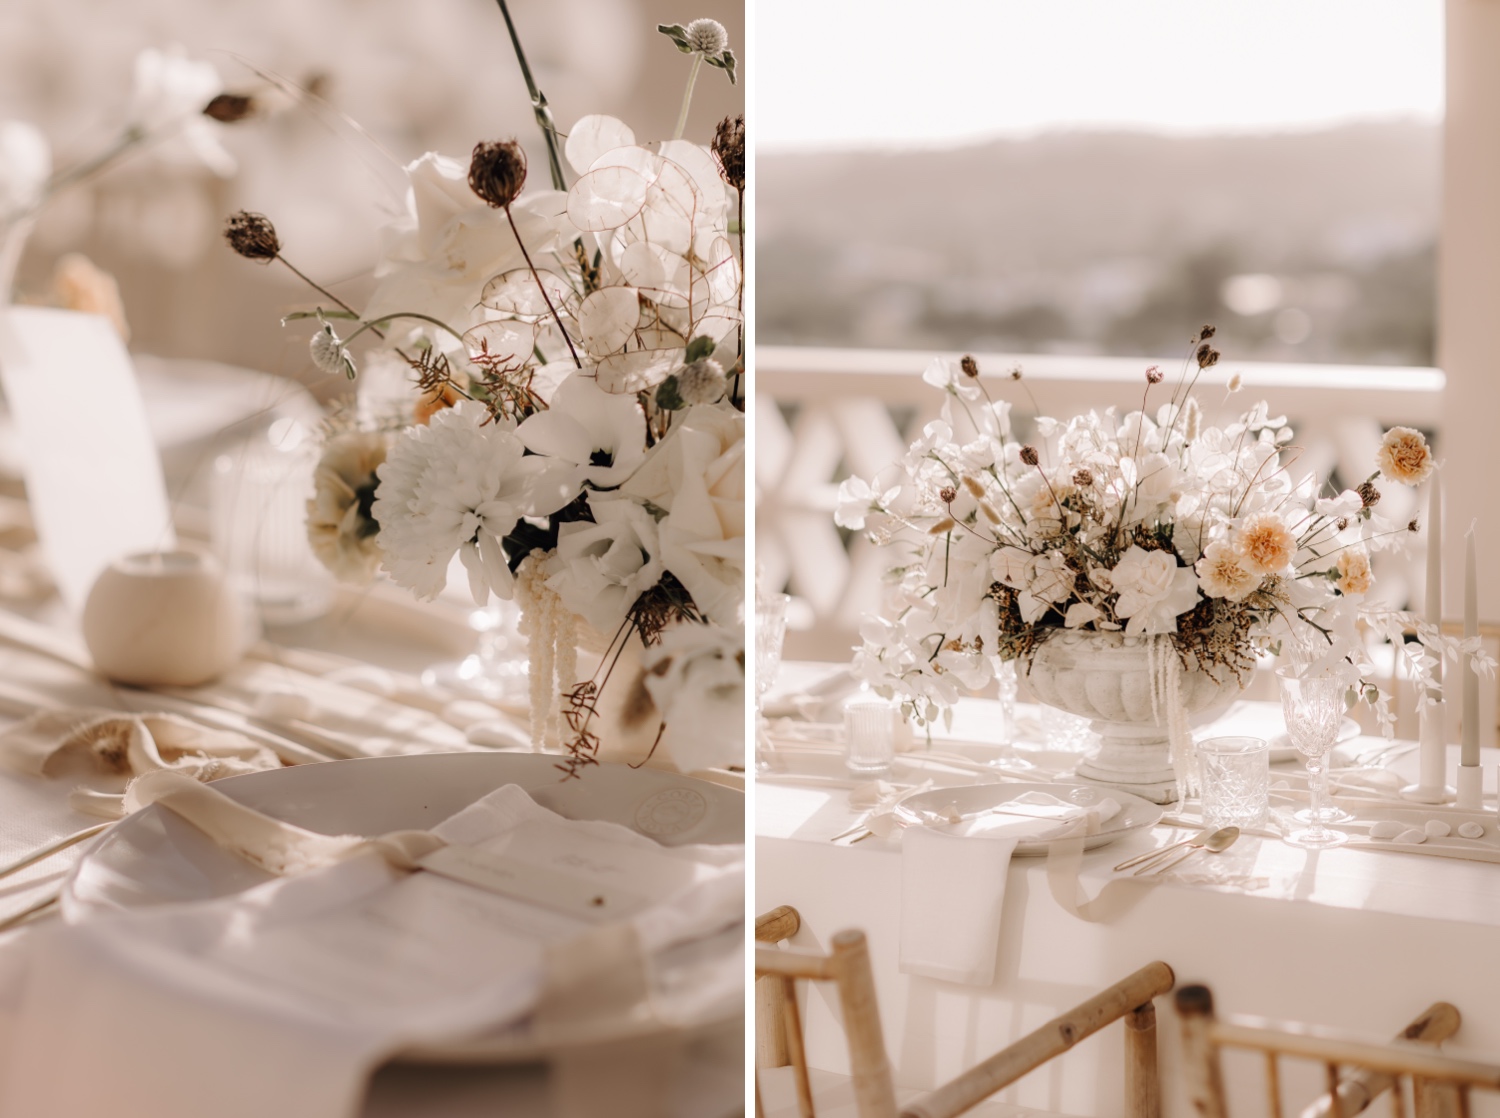 Huwelijksfotograaf buitenland - details van de bloemen op de tafel bij octant Vila Monte in Portugal